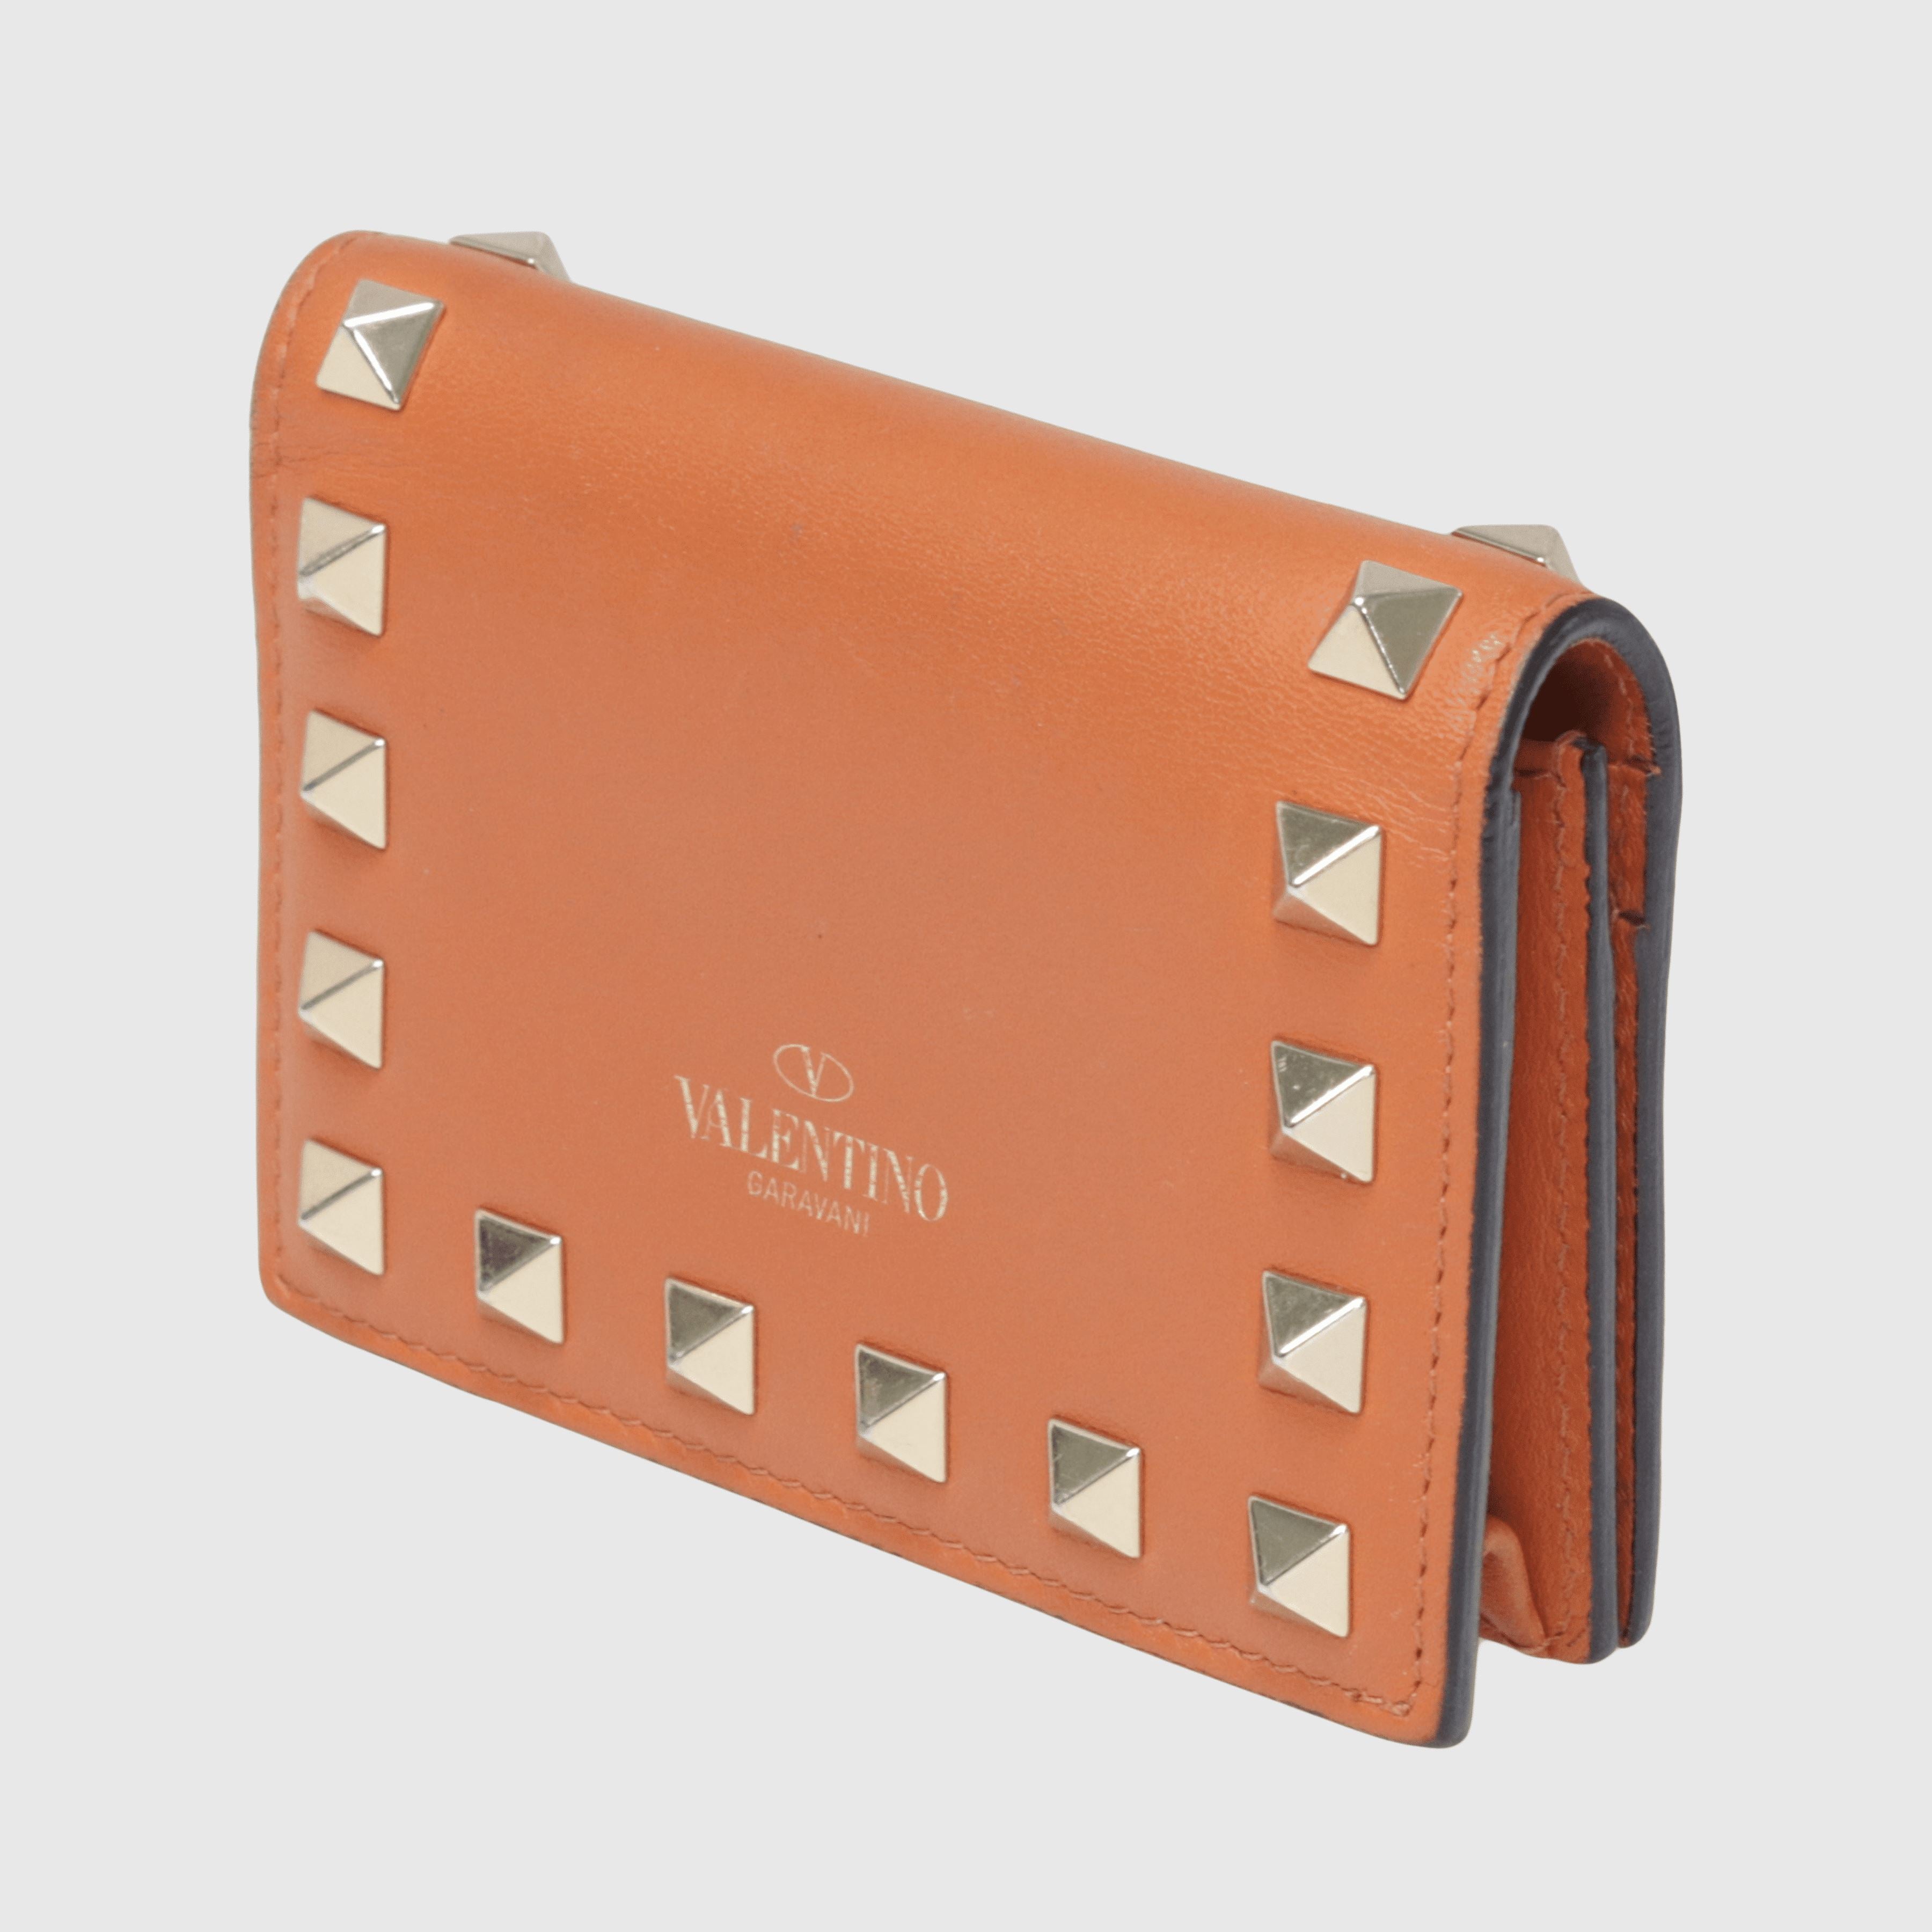 Dark Orange Rockstud Flap Card Holder Accessories Valentino 